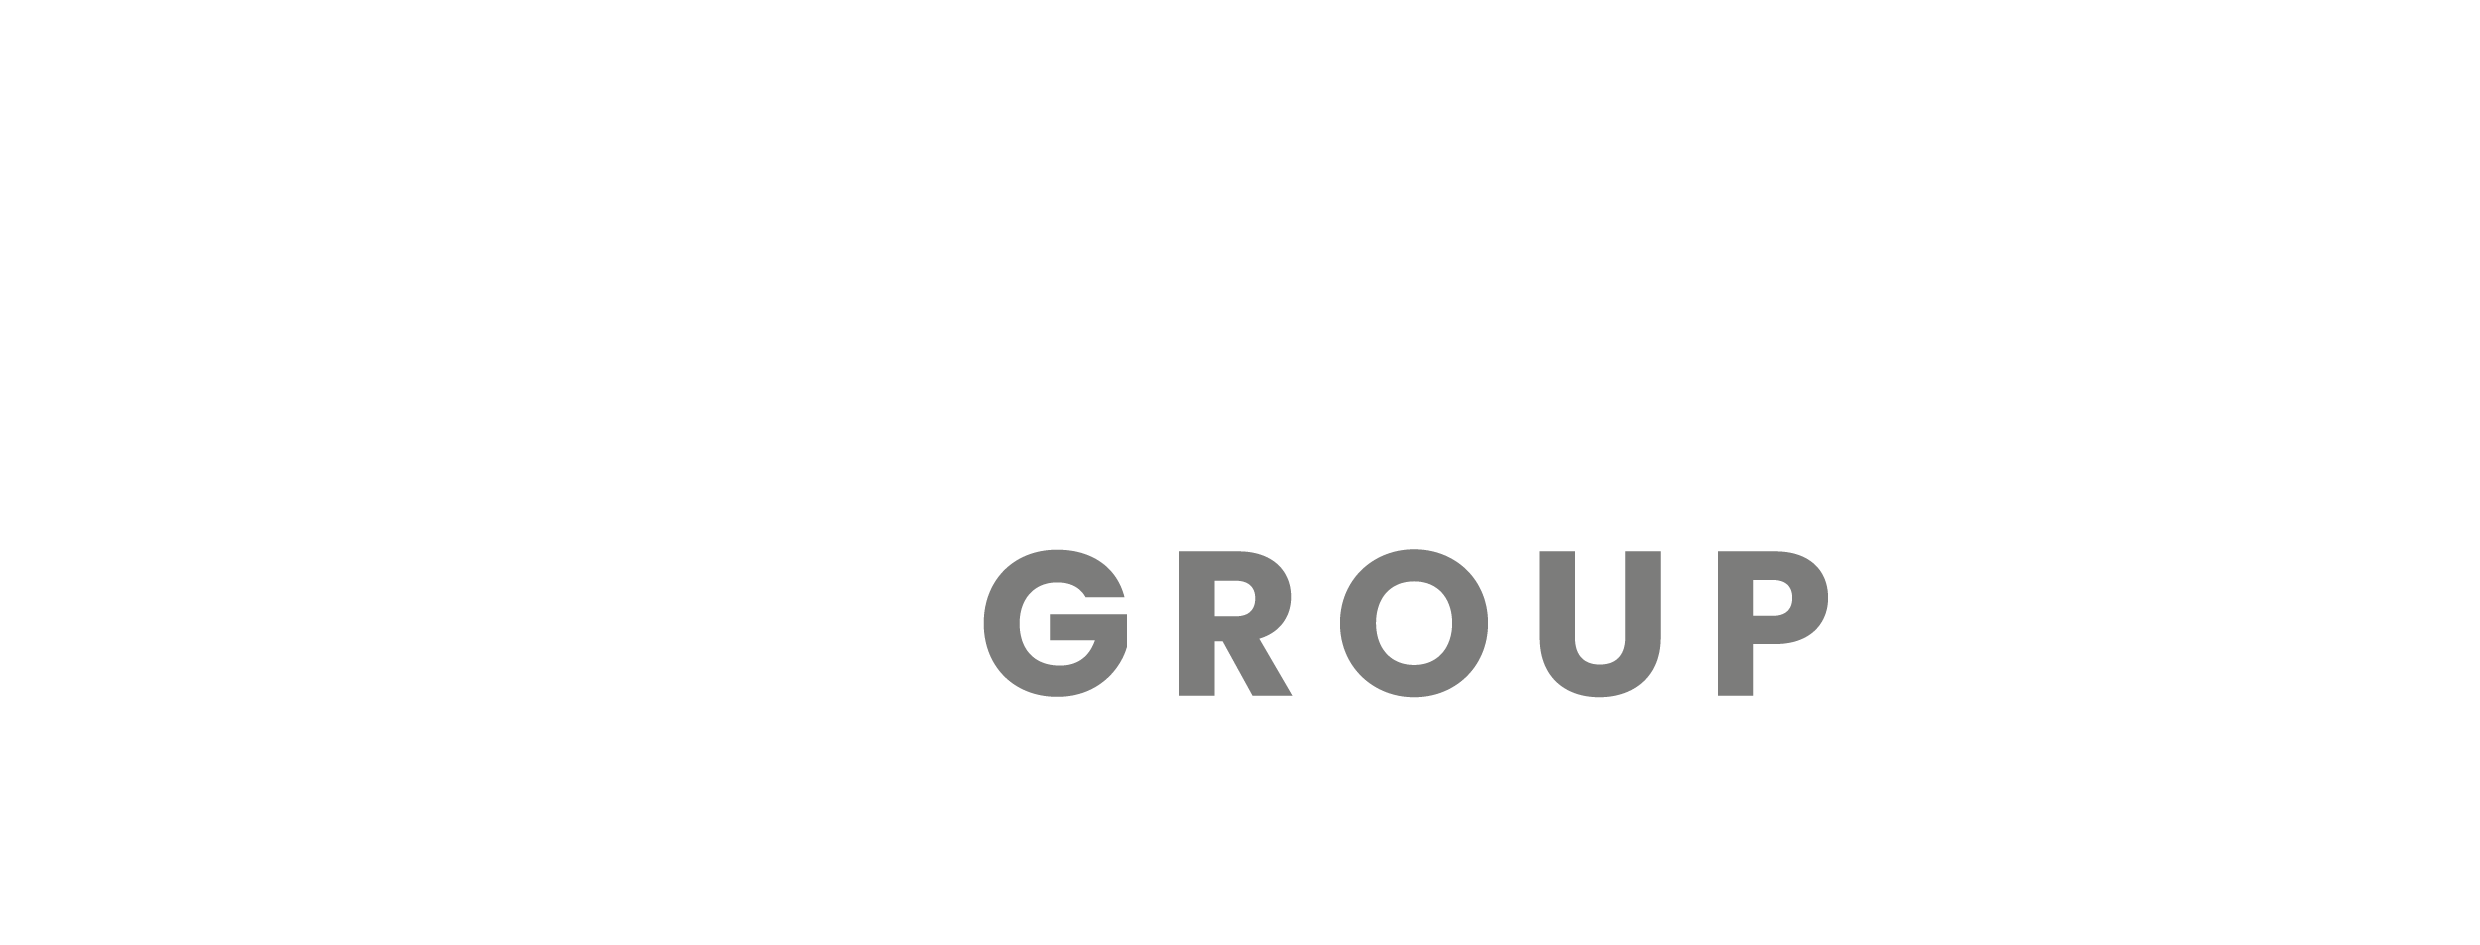 Quora Group